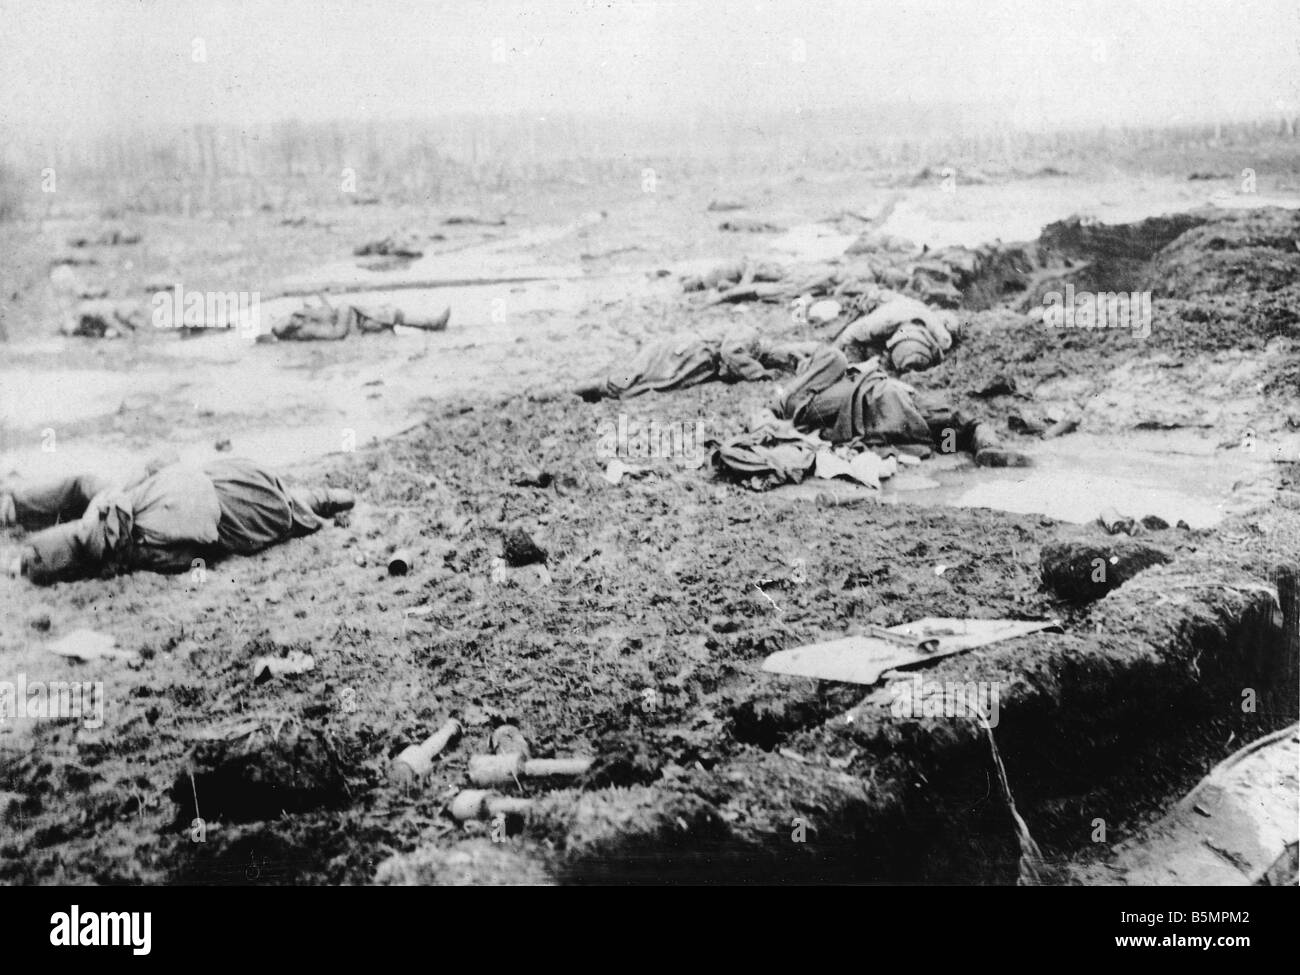 9 1916 318 A1 4 E Bataille de Postawy 1916 champ de bataille de la Première Guerre mondiale, Front de l'est la défaite des troupes russes après l'offensive ag Banque D'Images